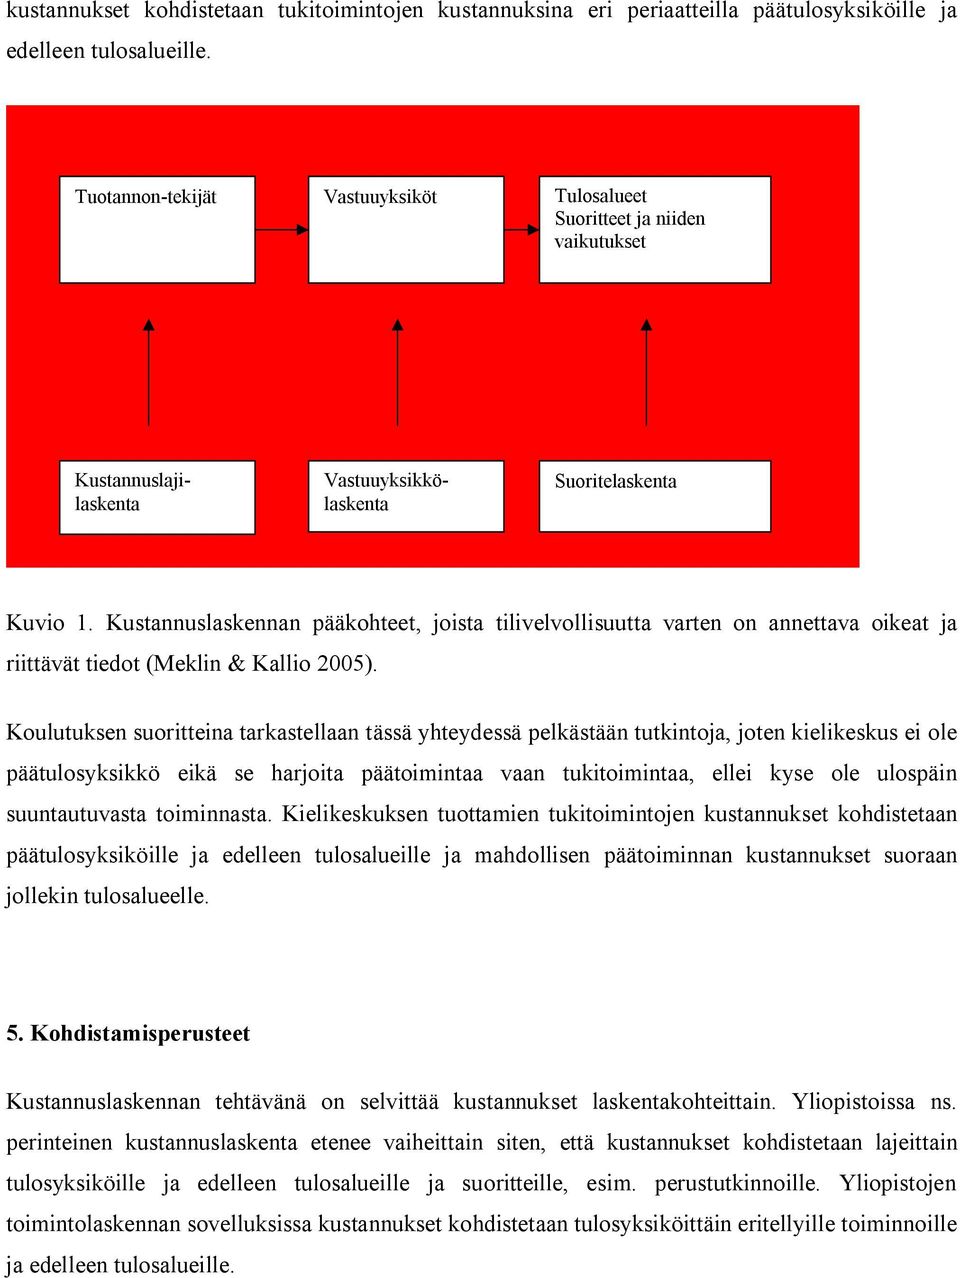 Kustannuslaskennan pääkohteet, joista tilivelvollisuutta varten on annettava oikeat ja riittävät tiedot (Meklin & Kallio 2005).